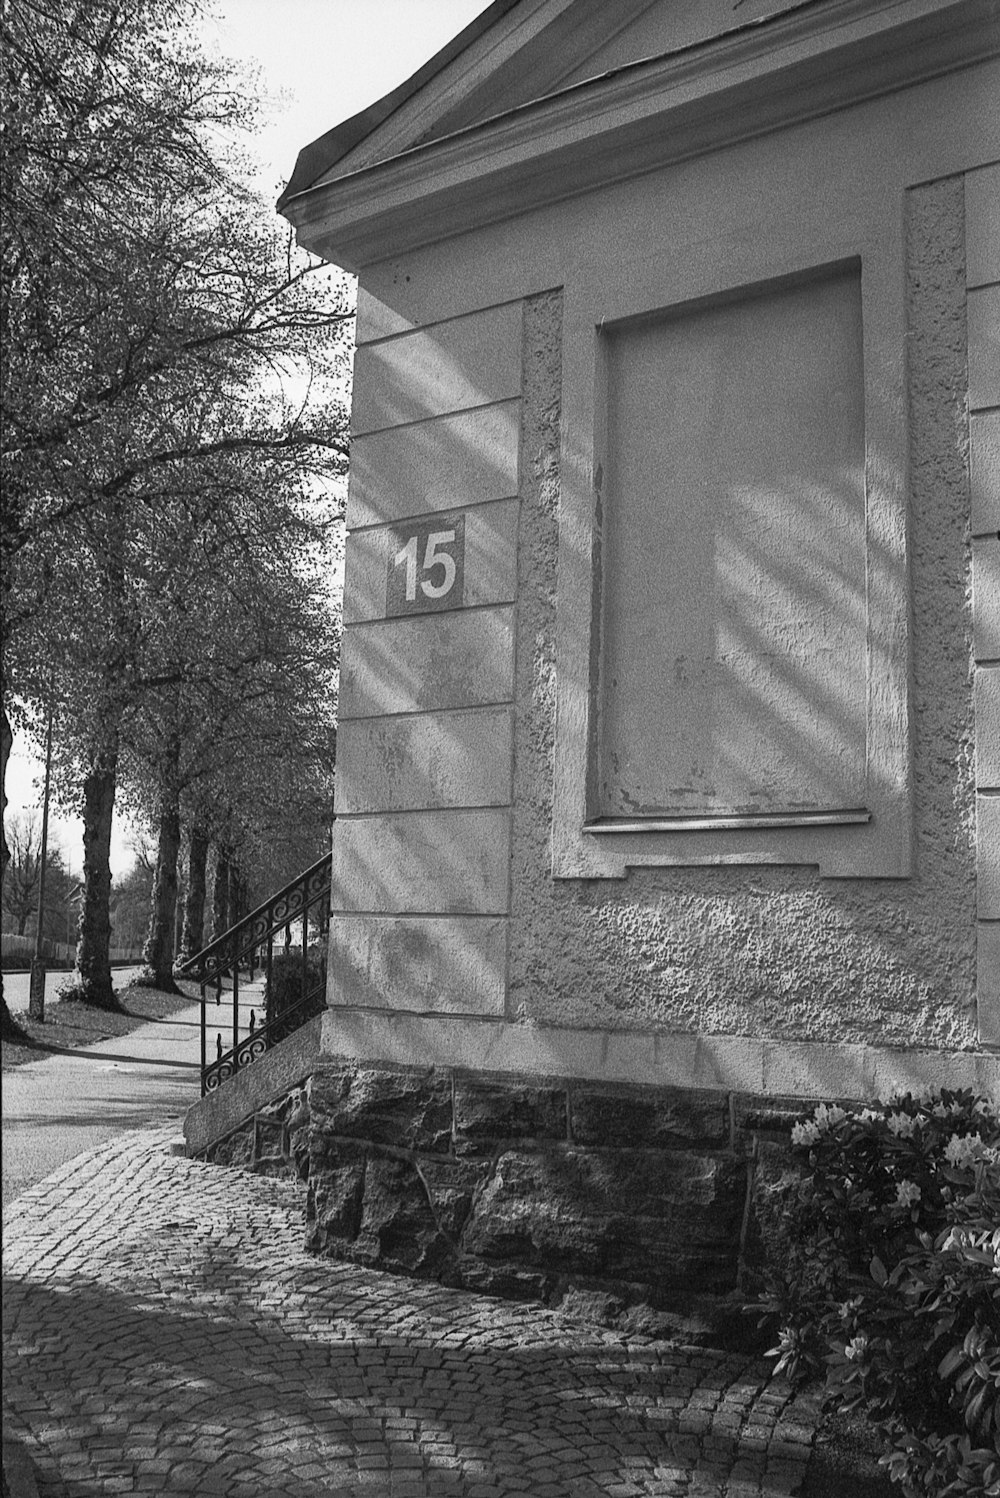 une photo en noir et blanc d’un bâtiment avec un numéro dessus